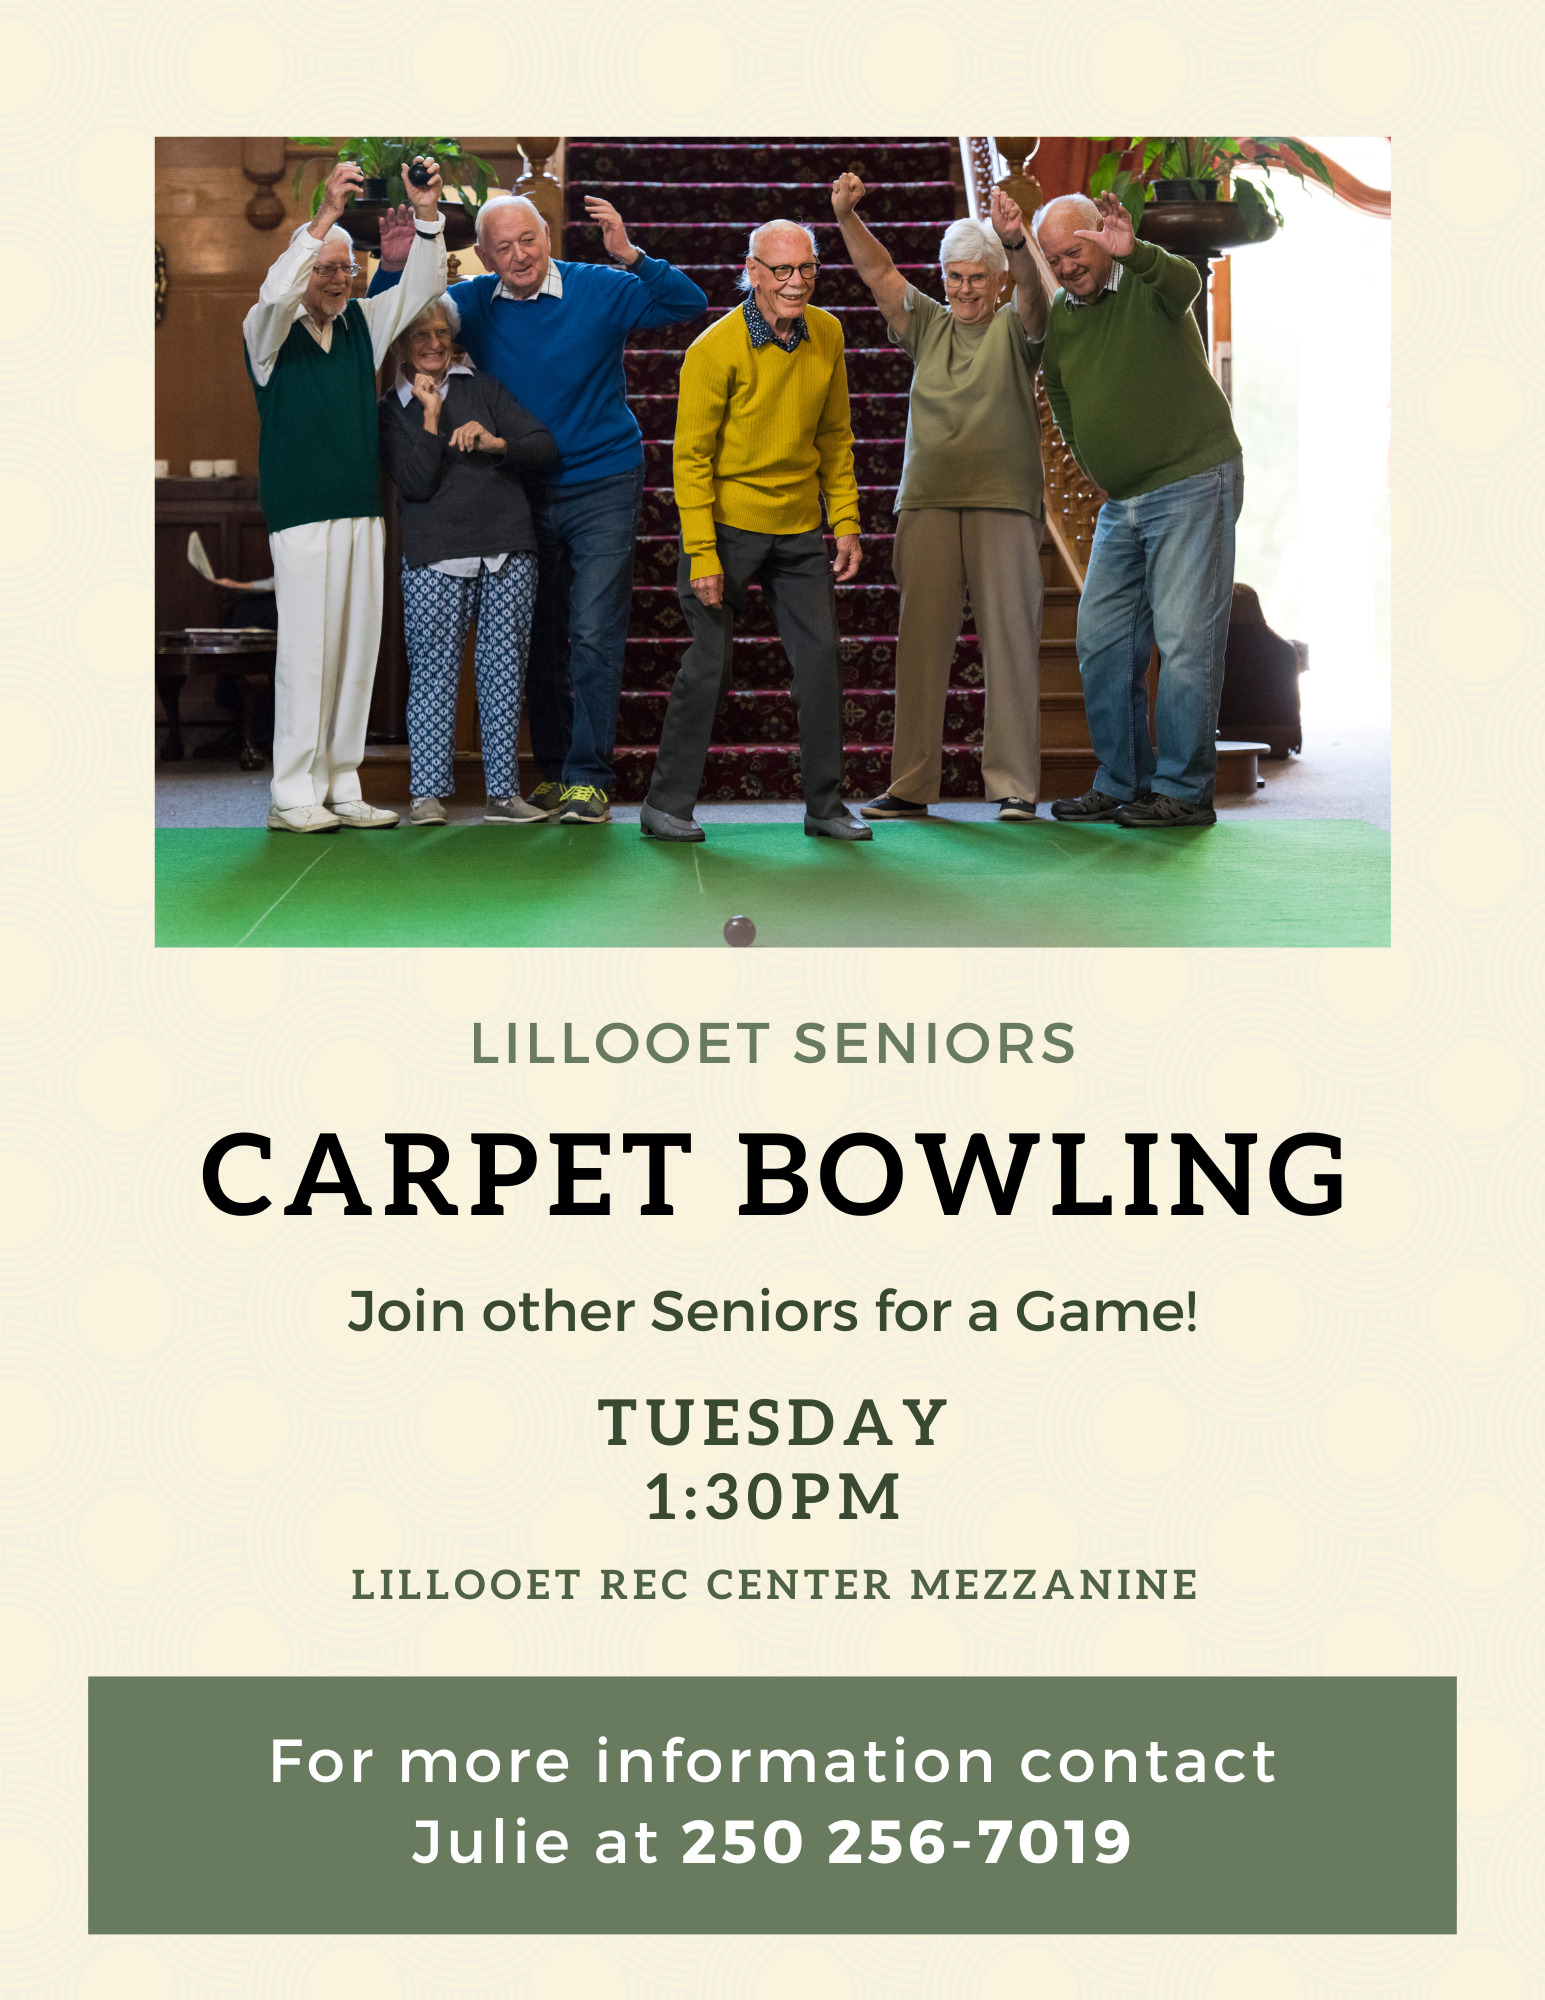 Poster for carpet bowling for seniors